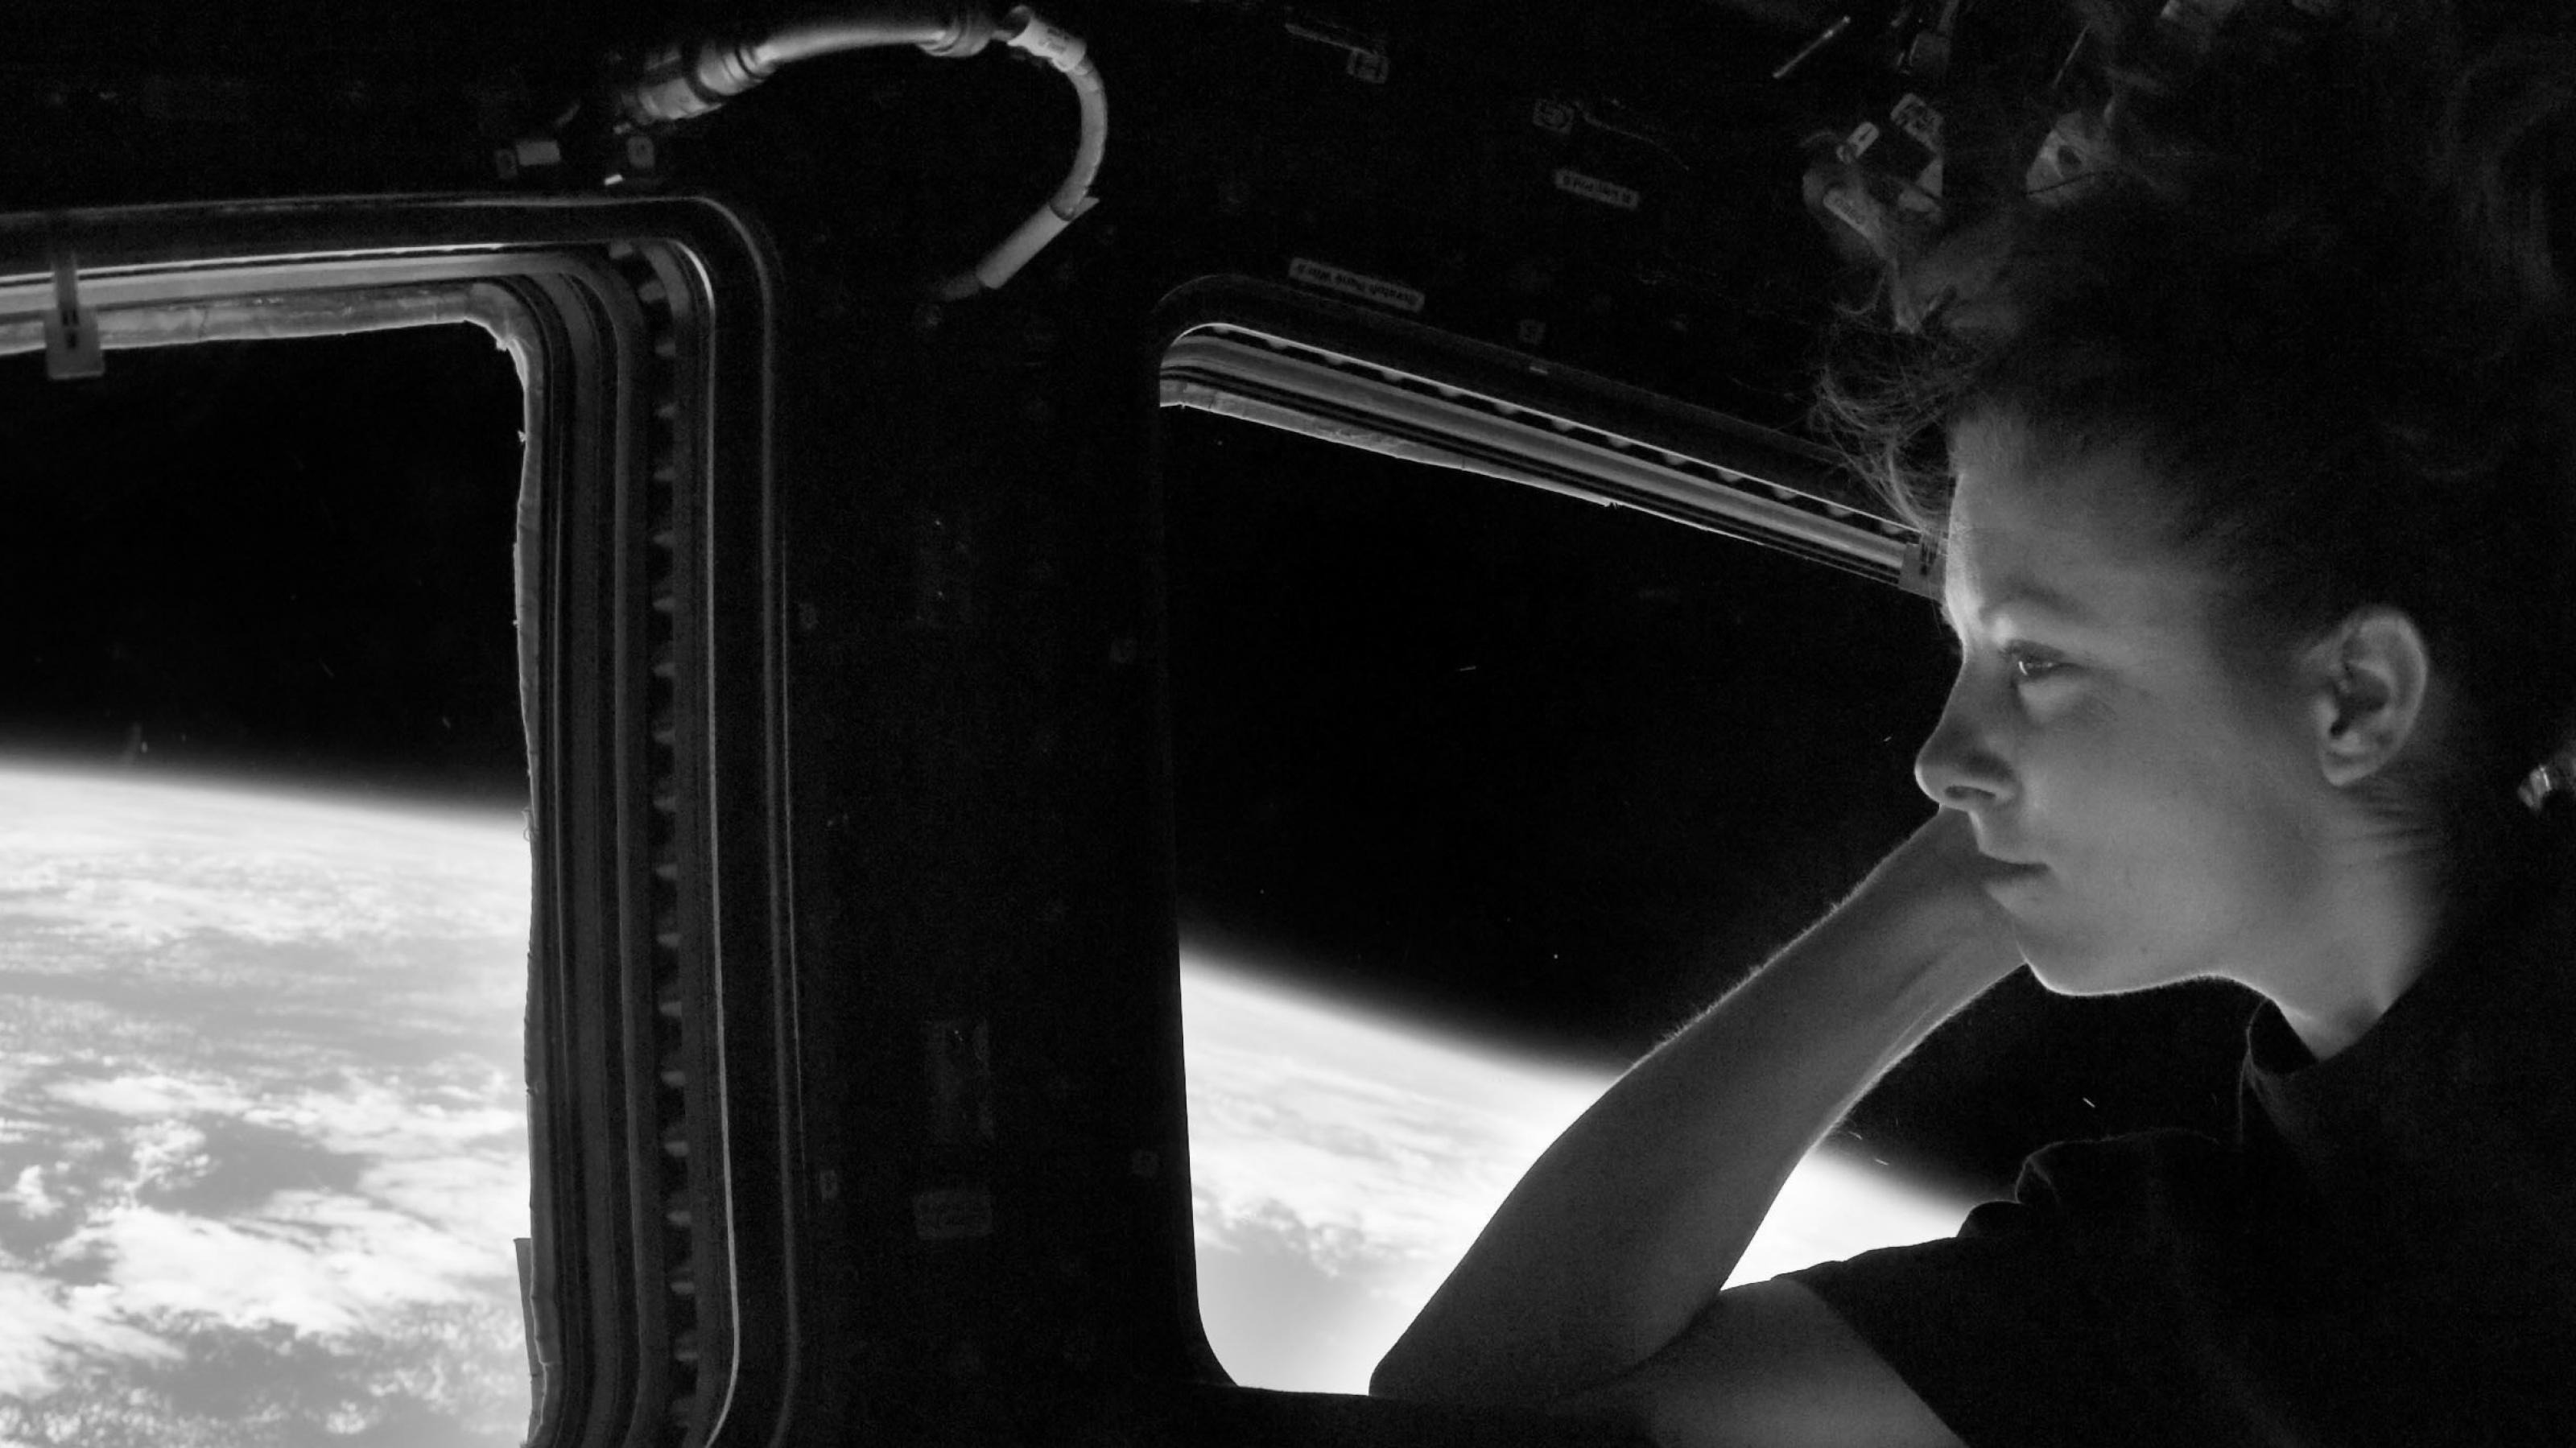 Eine NASA-Astronautin in schwarzem T-Shirt schaut aus einem Fenster der Raumstation und tut so, als würde sie ihren Kopf auf den Arm aufstützen (es sieht sehr entspannt aus).